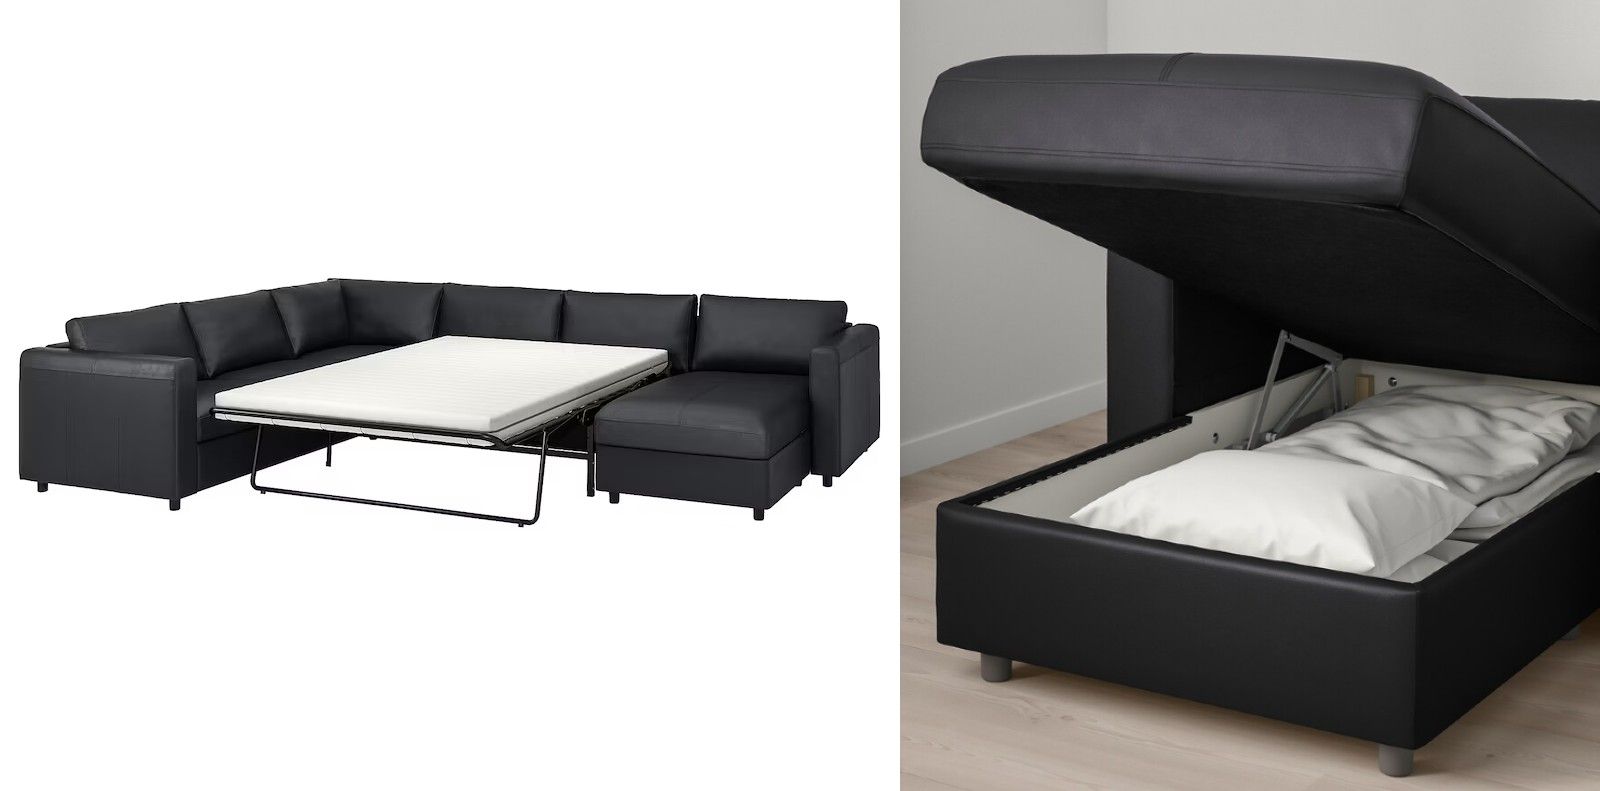 SOFÁ CAMA IKEA | Así es el sofá cama de Ikea de más de 3.000 euros